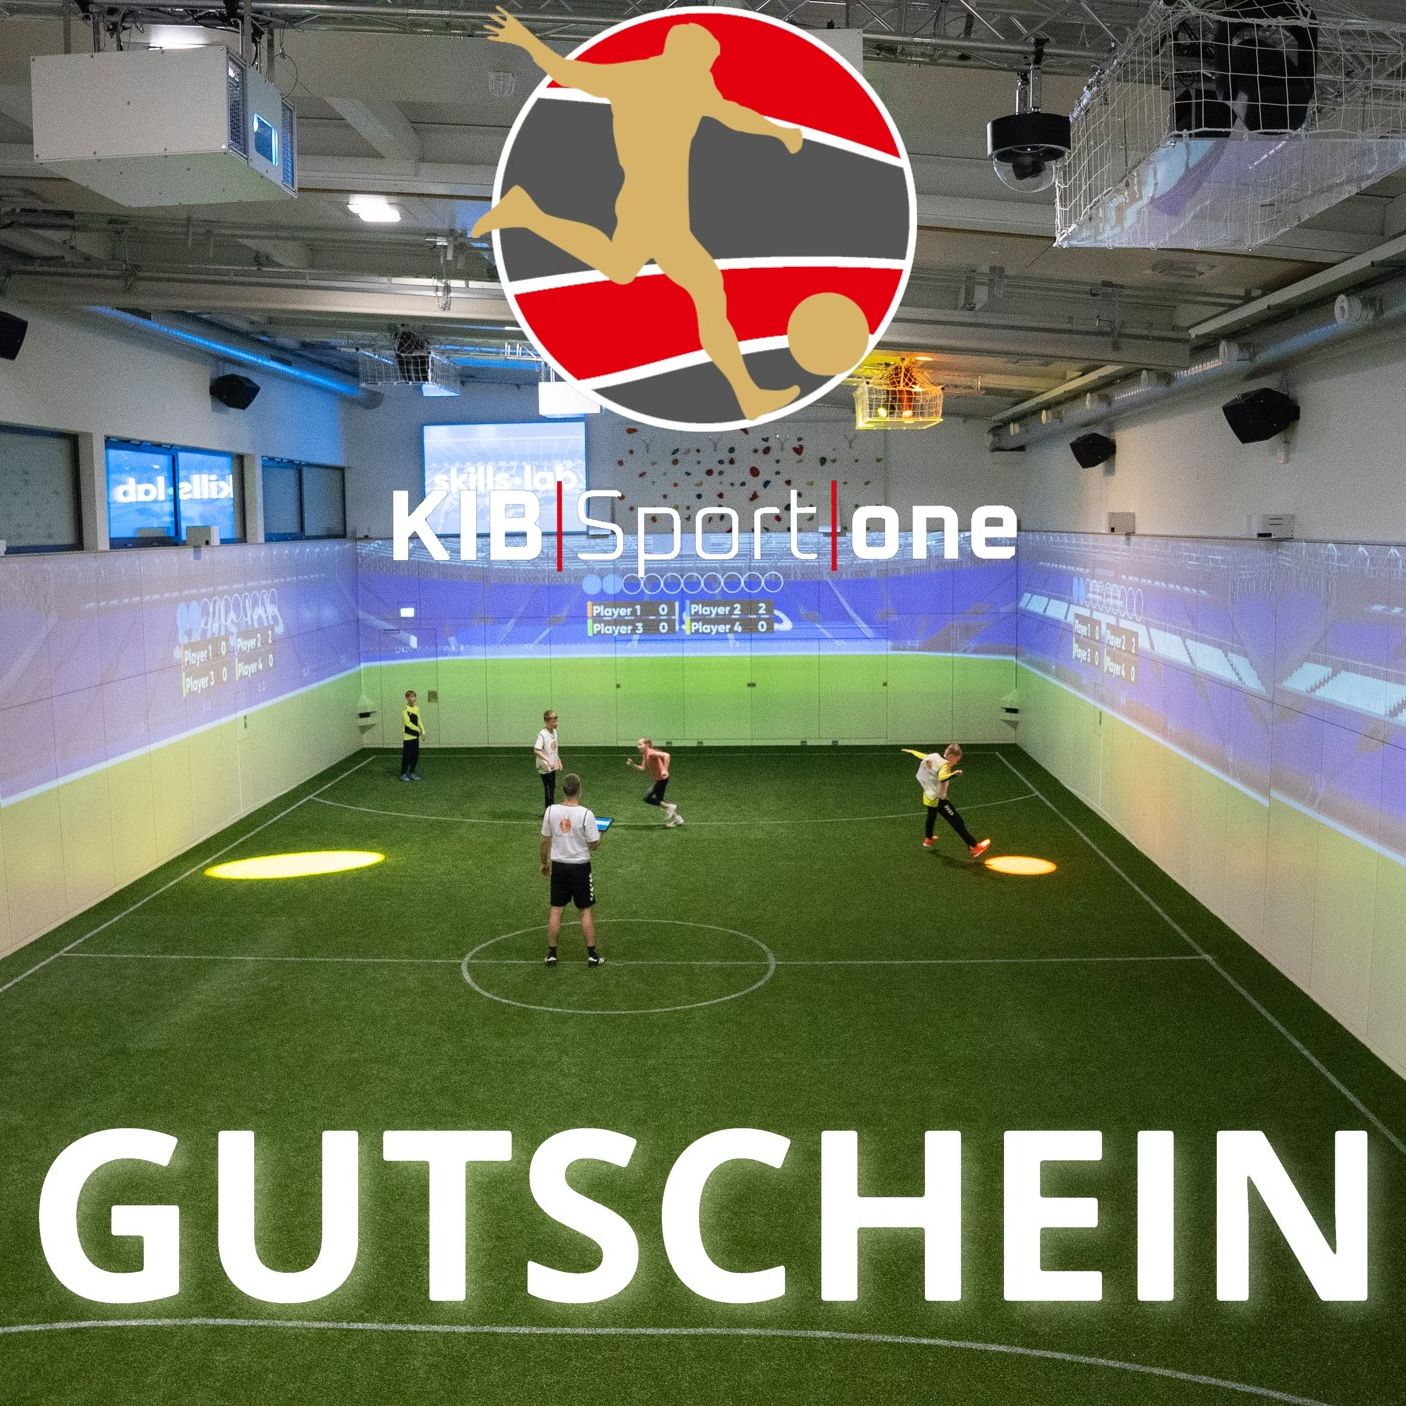 Ein Trainingsmoment von vier jungen Fußball-Schülern und einem Trainer in der Indoor Soccer Halle, darunter der Text "Gutschein".